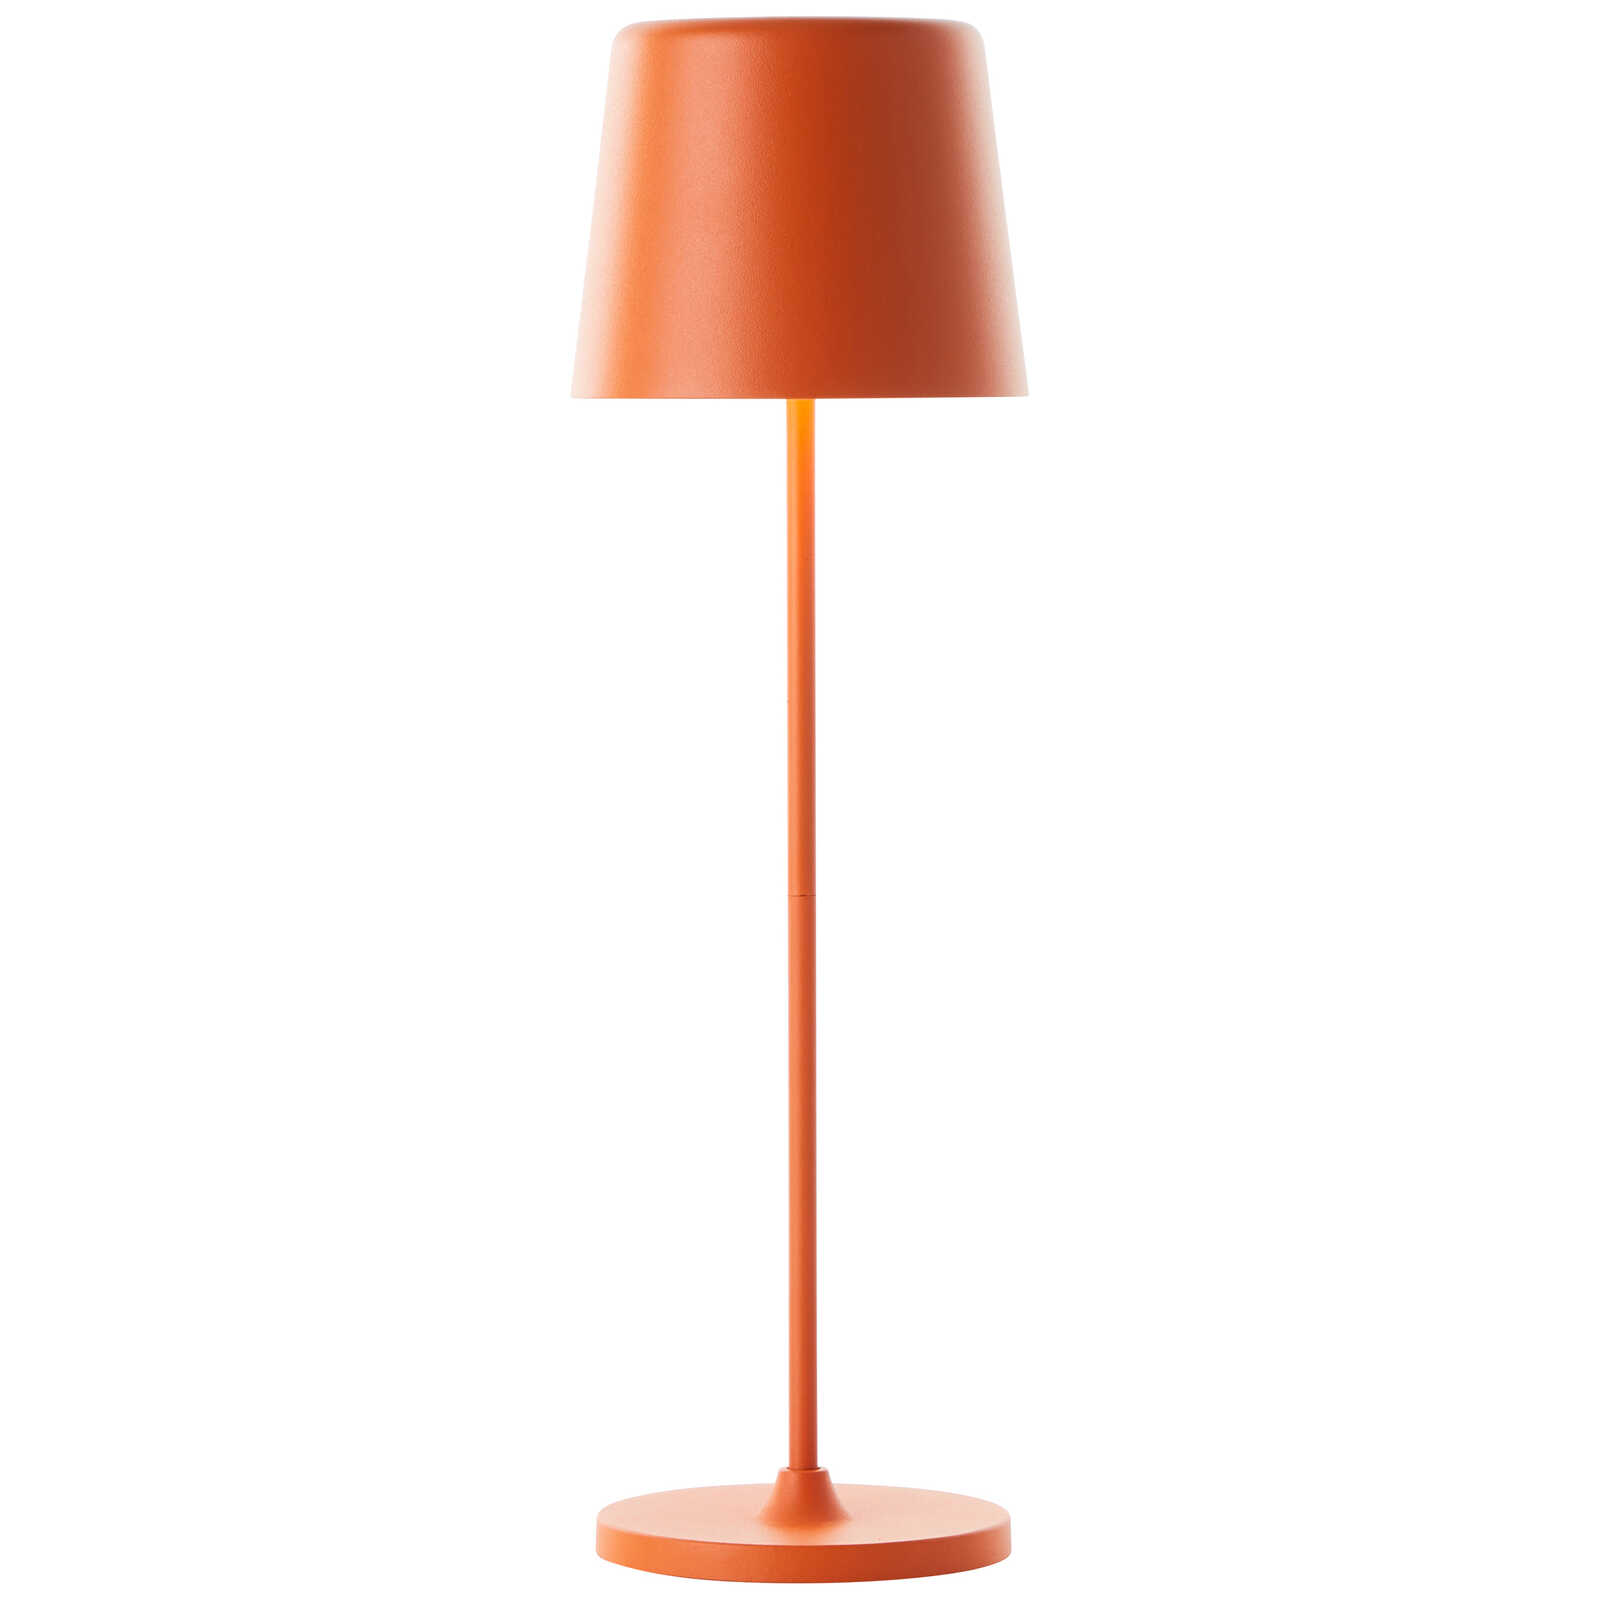             Metalen tafellamp - Cosy 7 - Oranje
        